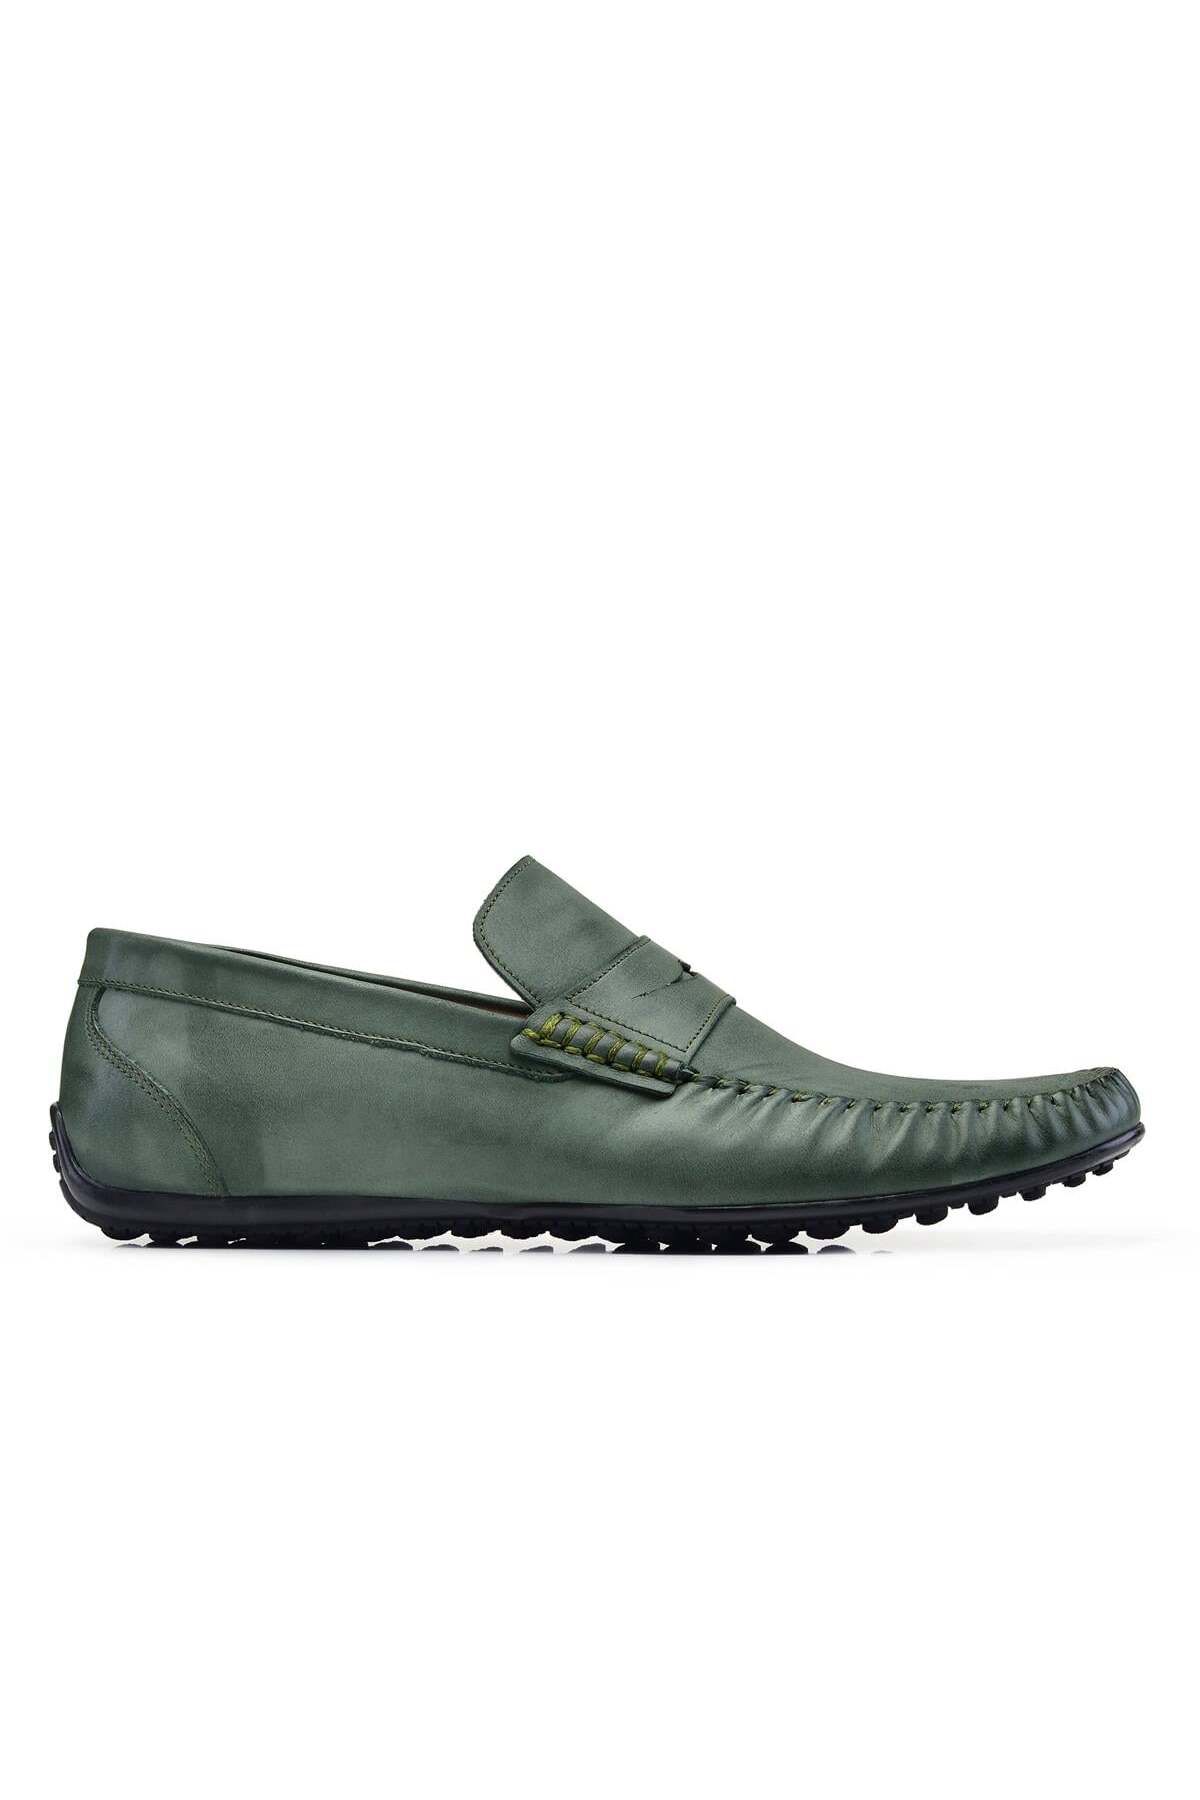 Nevzat Onay Nubuk Yeşil Yazlık Loafer Erkek Ayakkabı -22926-